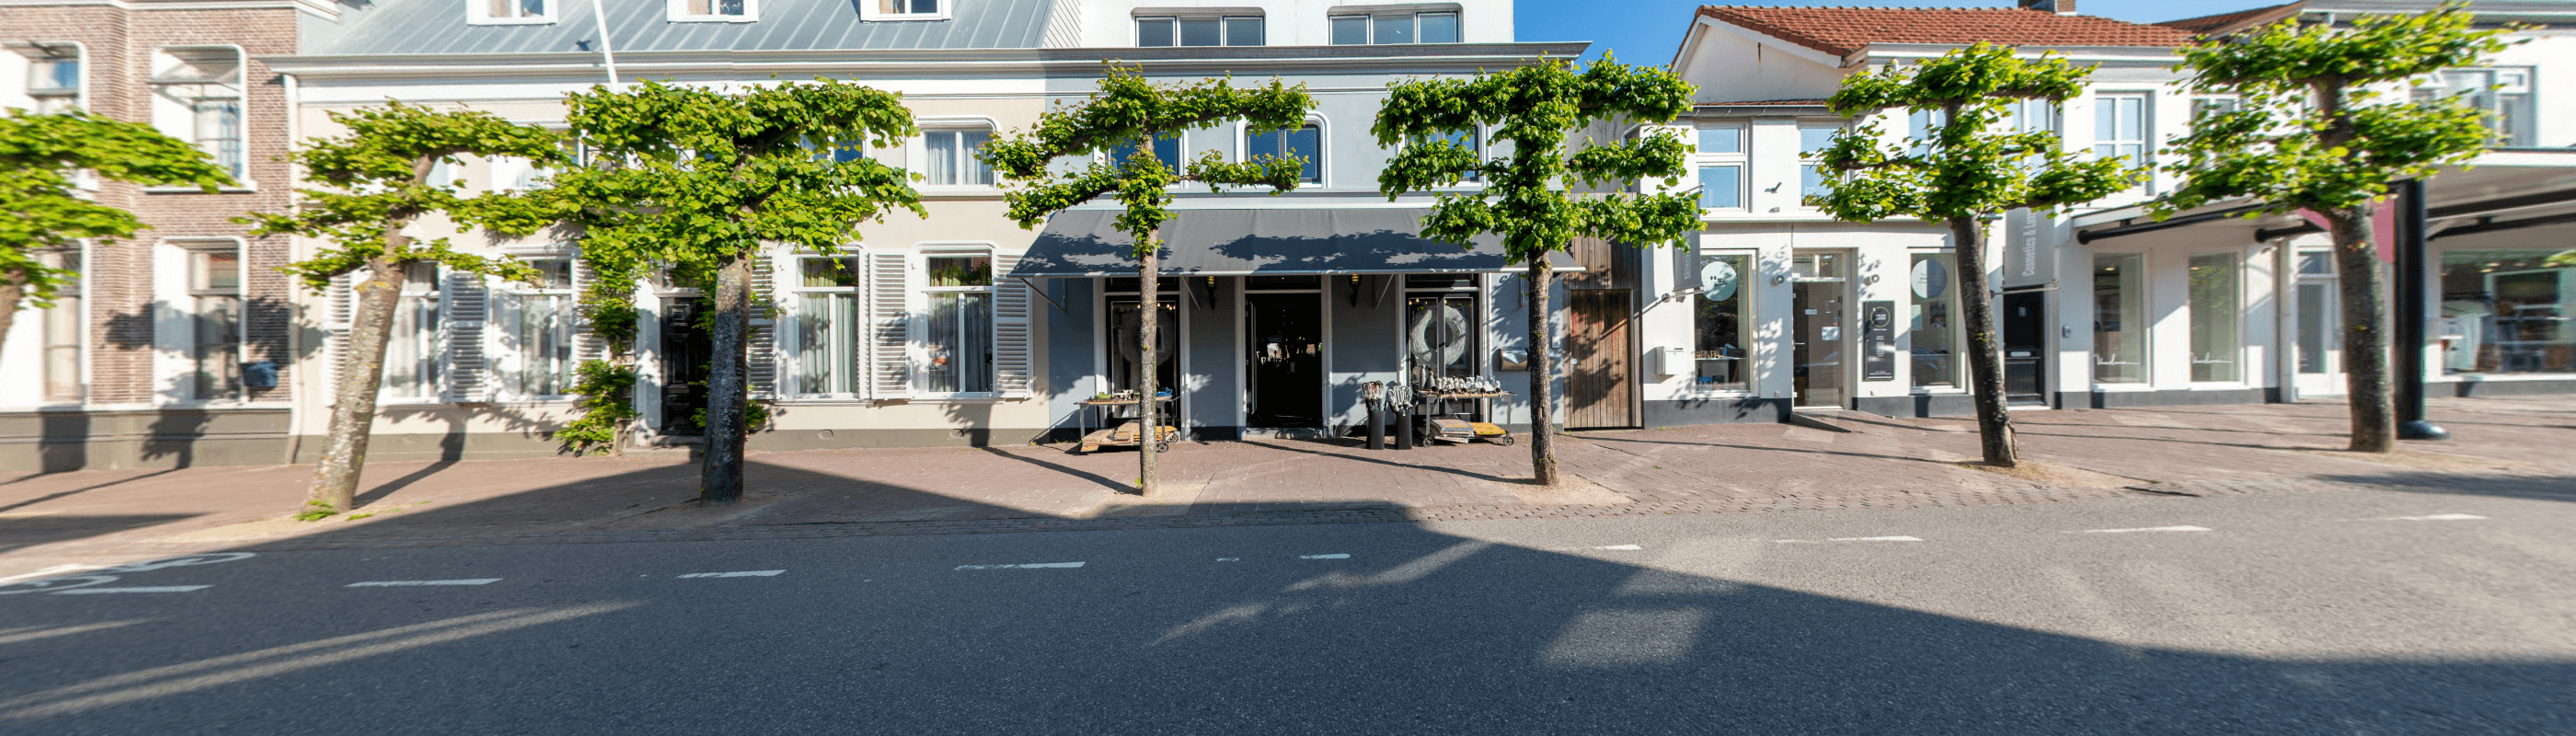 De Drie Linden Domburg - virtuele street view tour door de winkel